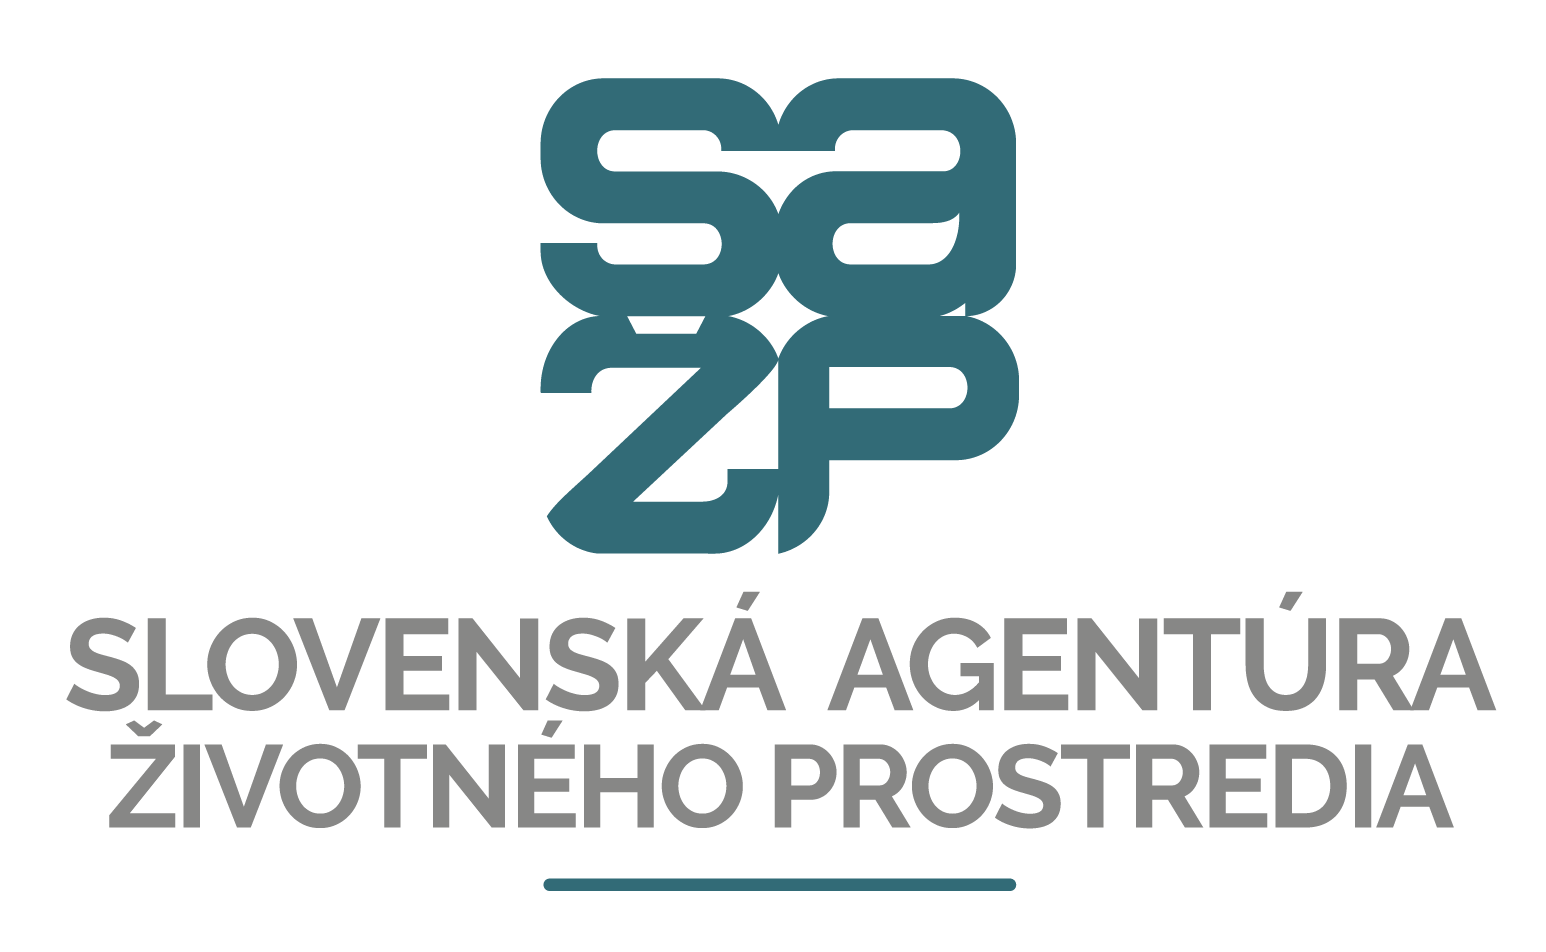 Slovenská agentúra životného prostredia